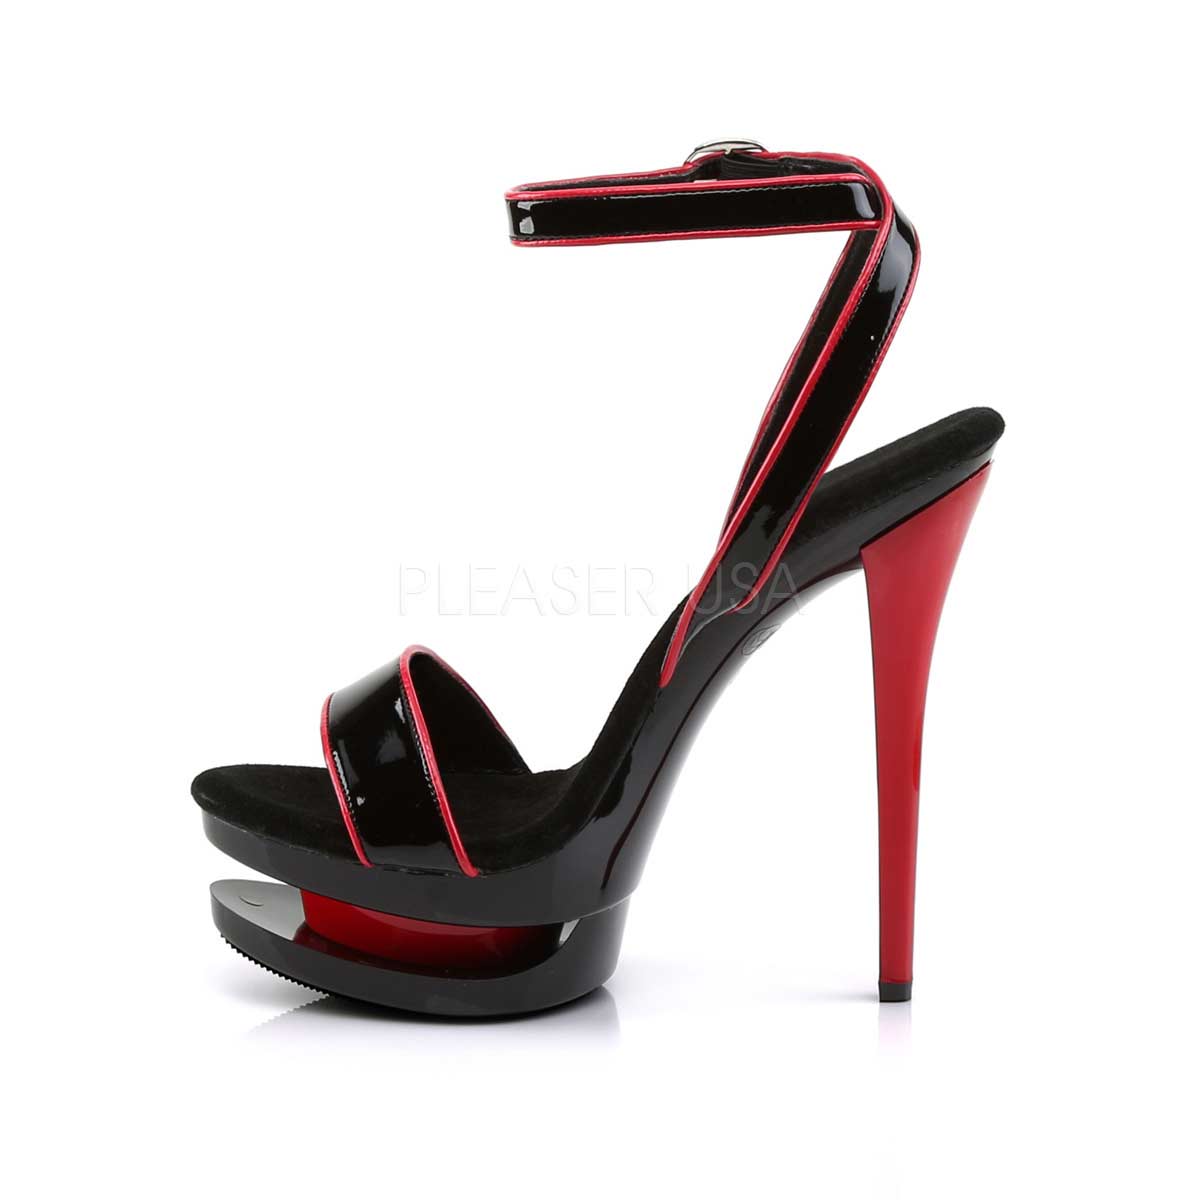 Pleaser Blondie-631-2 - Black Patent/Red in Sexy Heels & Platforms - $59.95